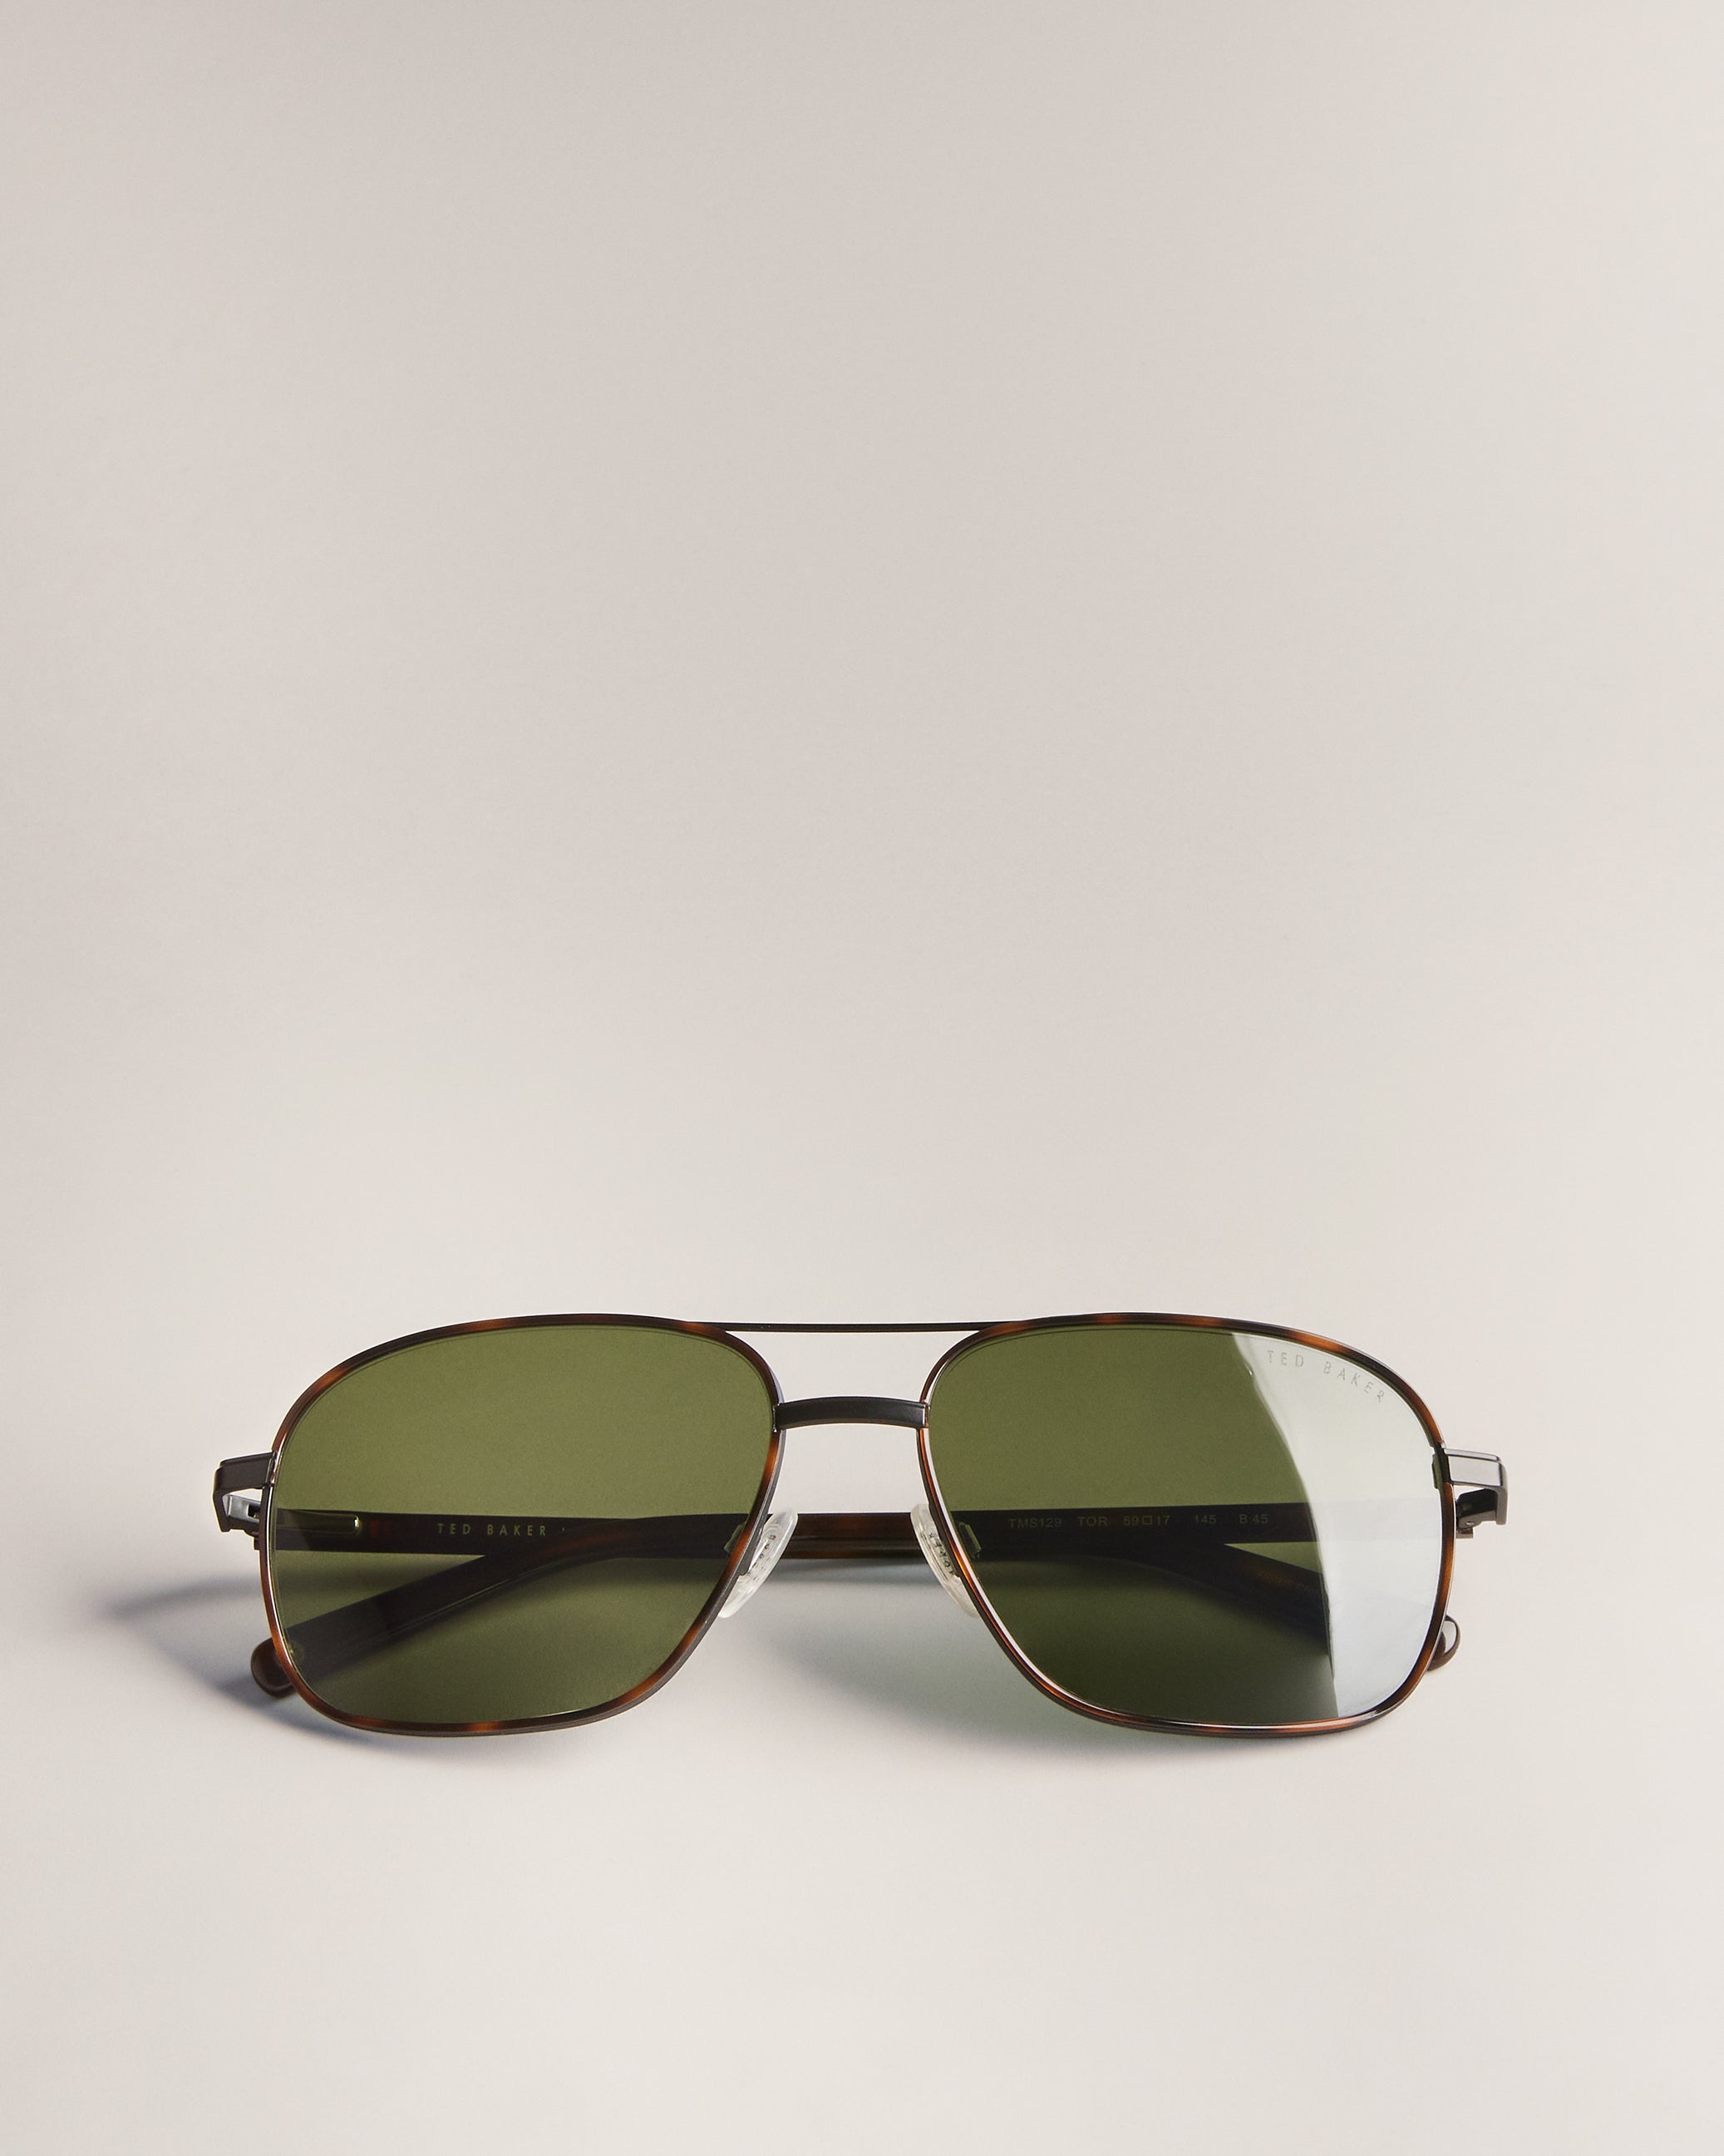 Men's Sunglasses – Ted Baker, United States